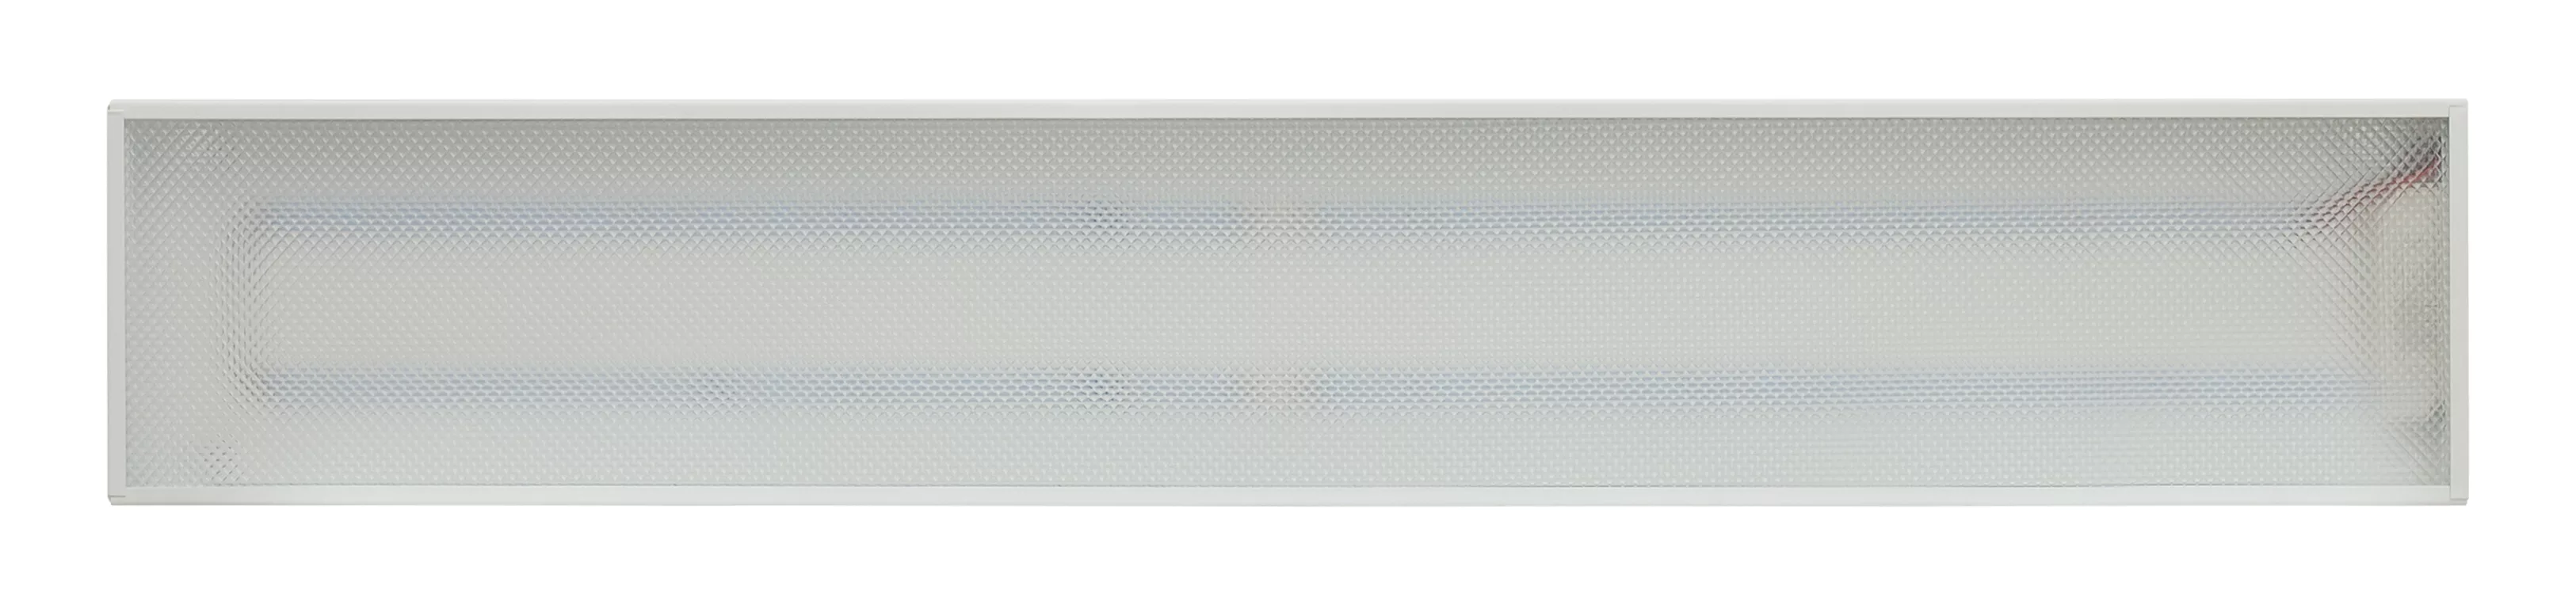 Аварийный светодиодный светильник ПСО 24 микропризма IP20 600 мм